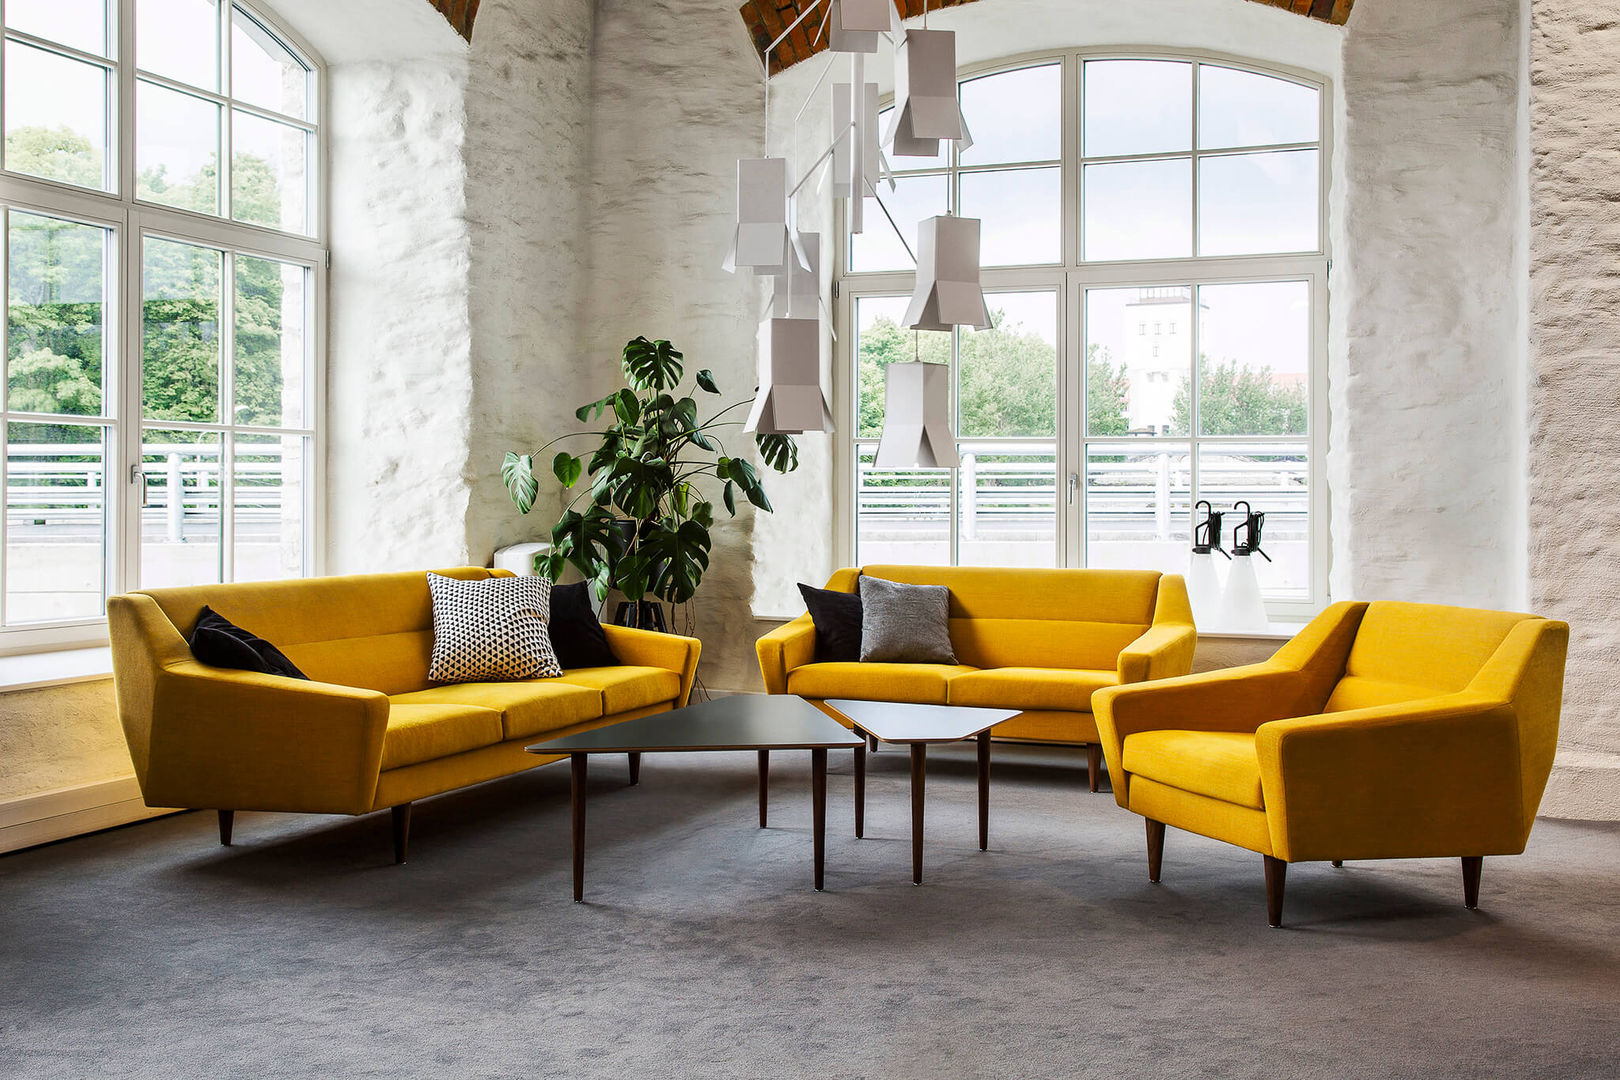 Ein Designer-Sofa für 13 verschiedene Looks, Baltic Design Shop Baltic Design Shop Salas de estilo escandinavo Madera Acabado en madera